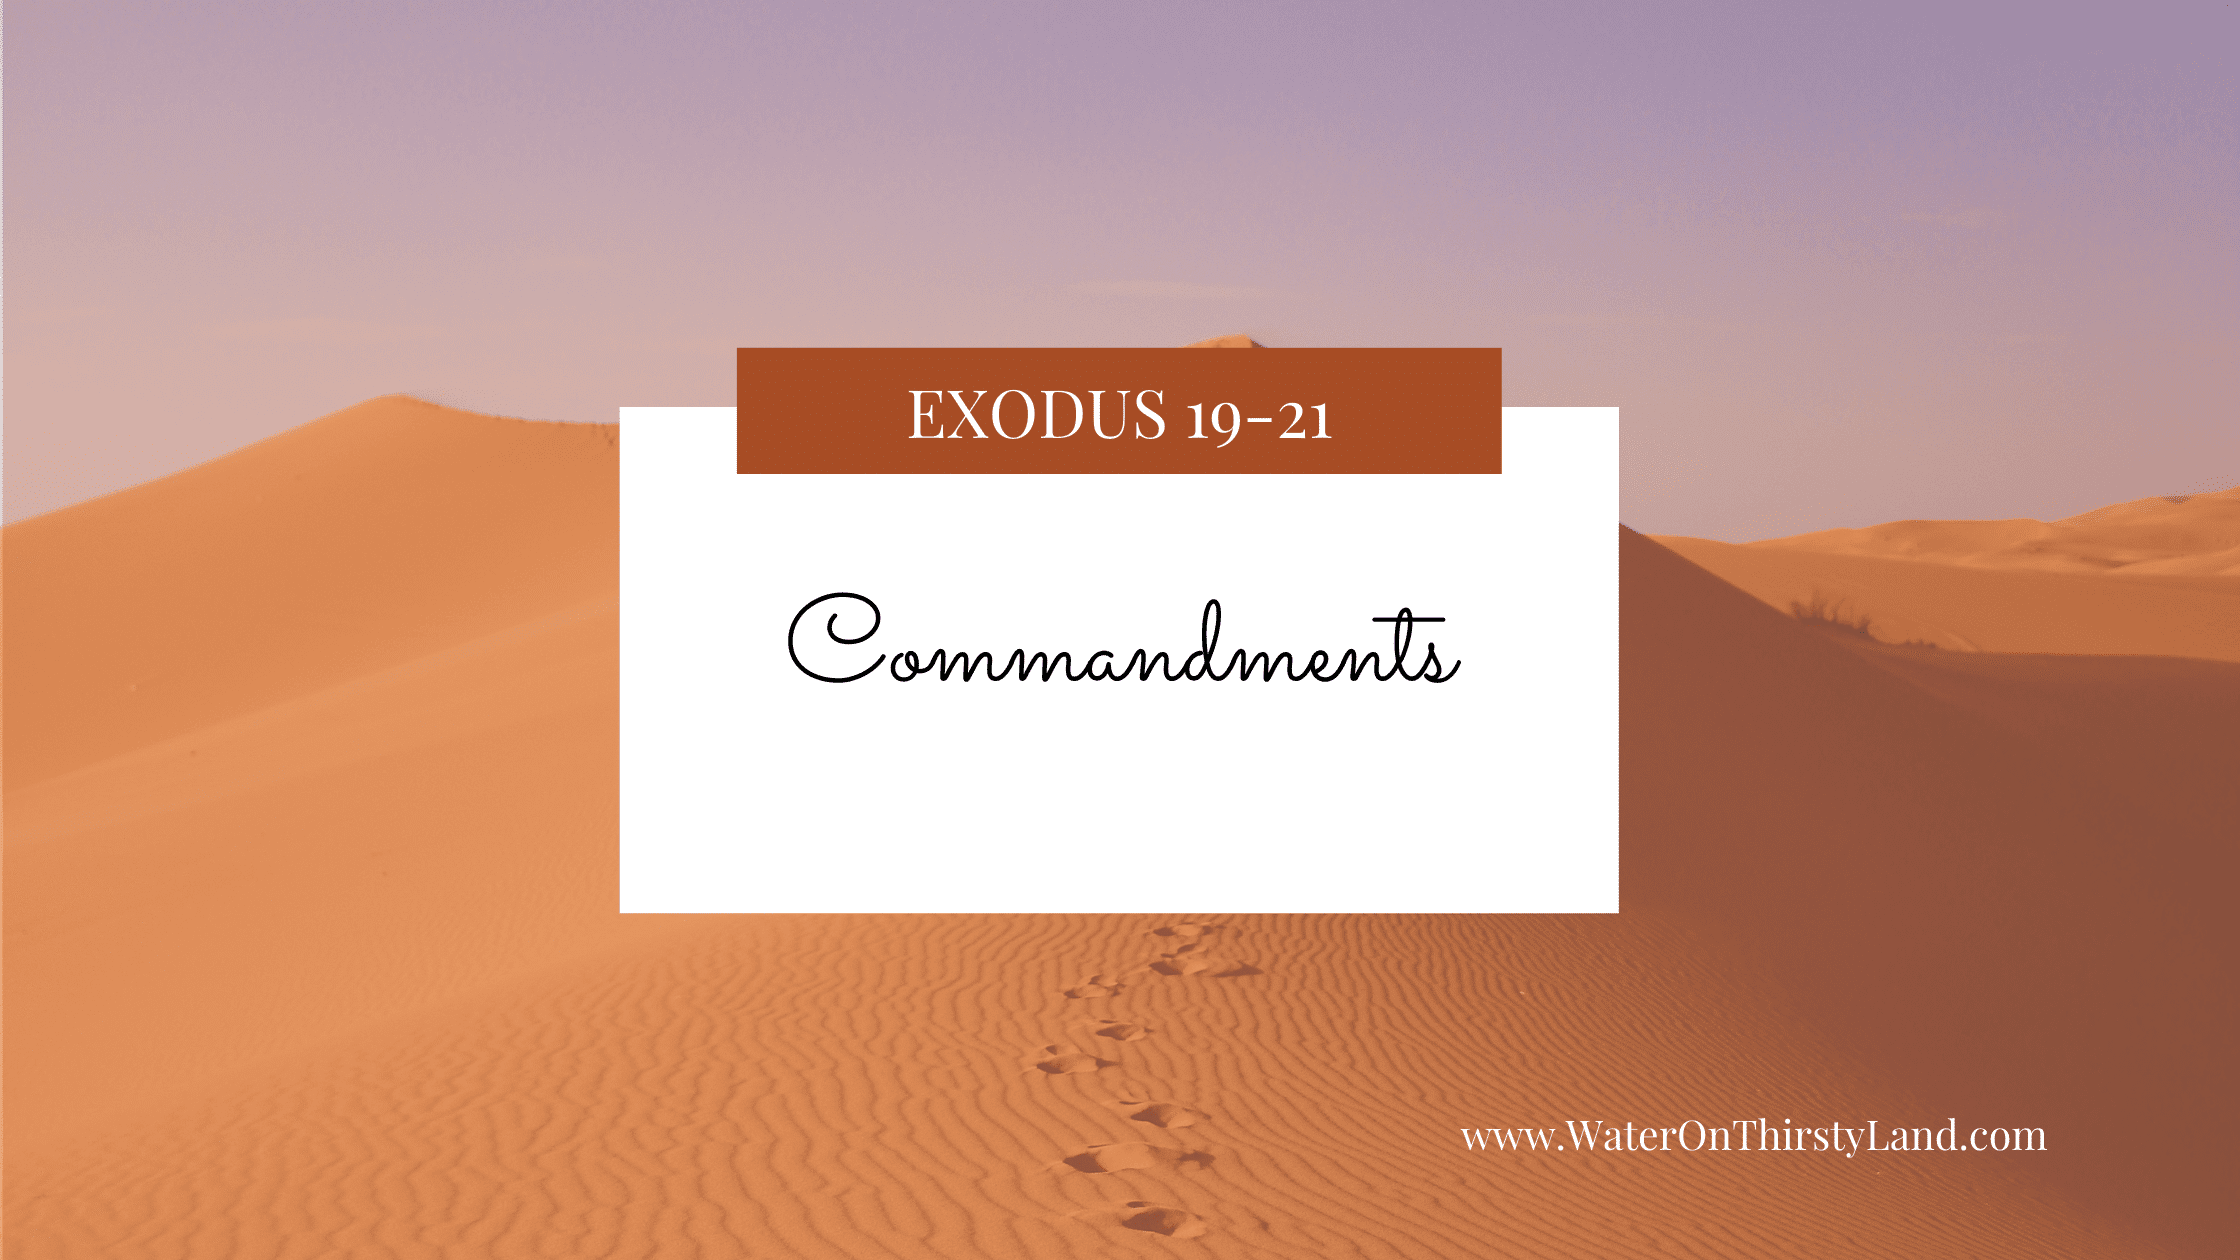 Exodus 19-21: 10 Commandments